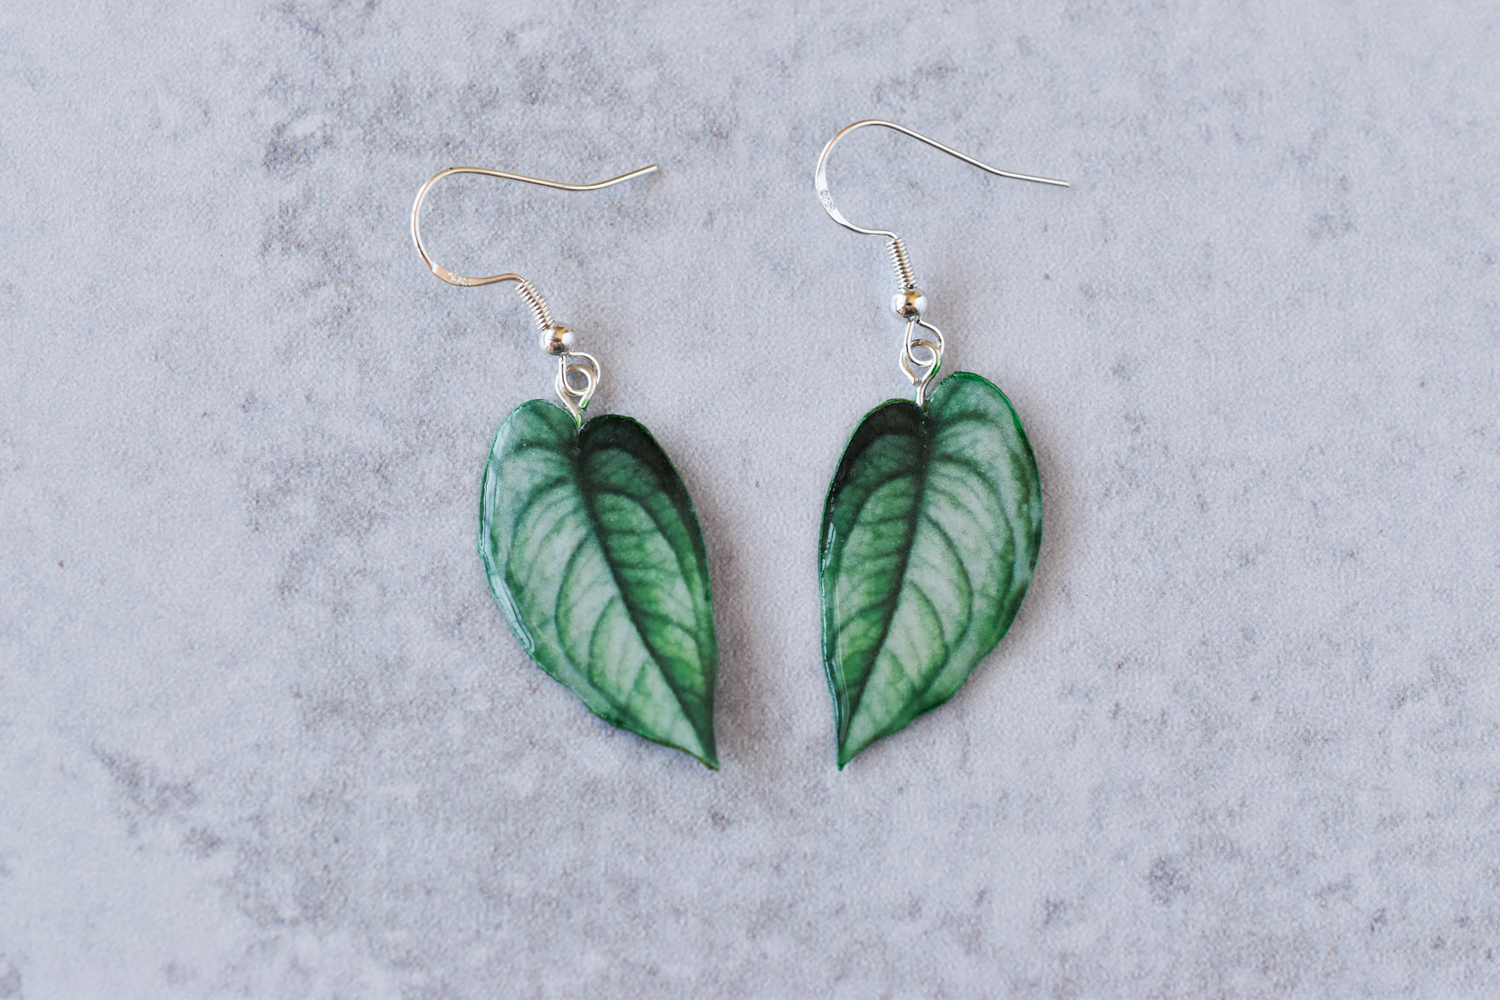 Monstera Siltepecana Plant Earrings | Leaf Earrings